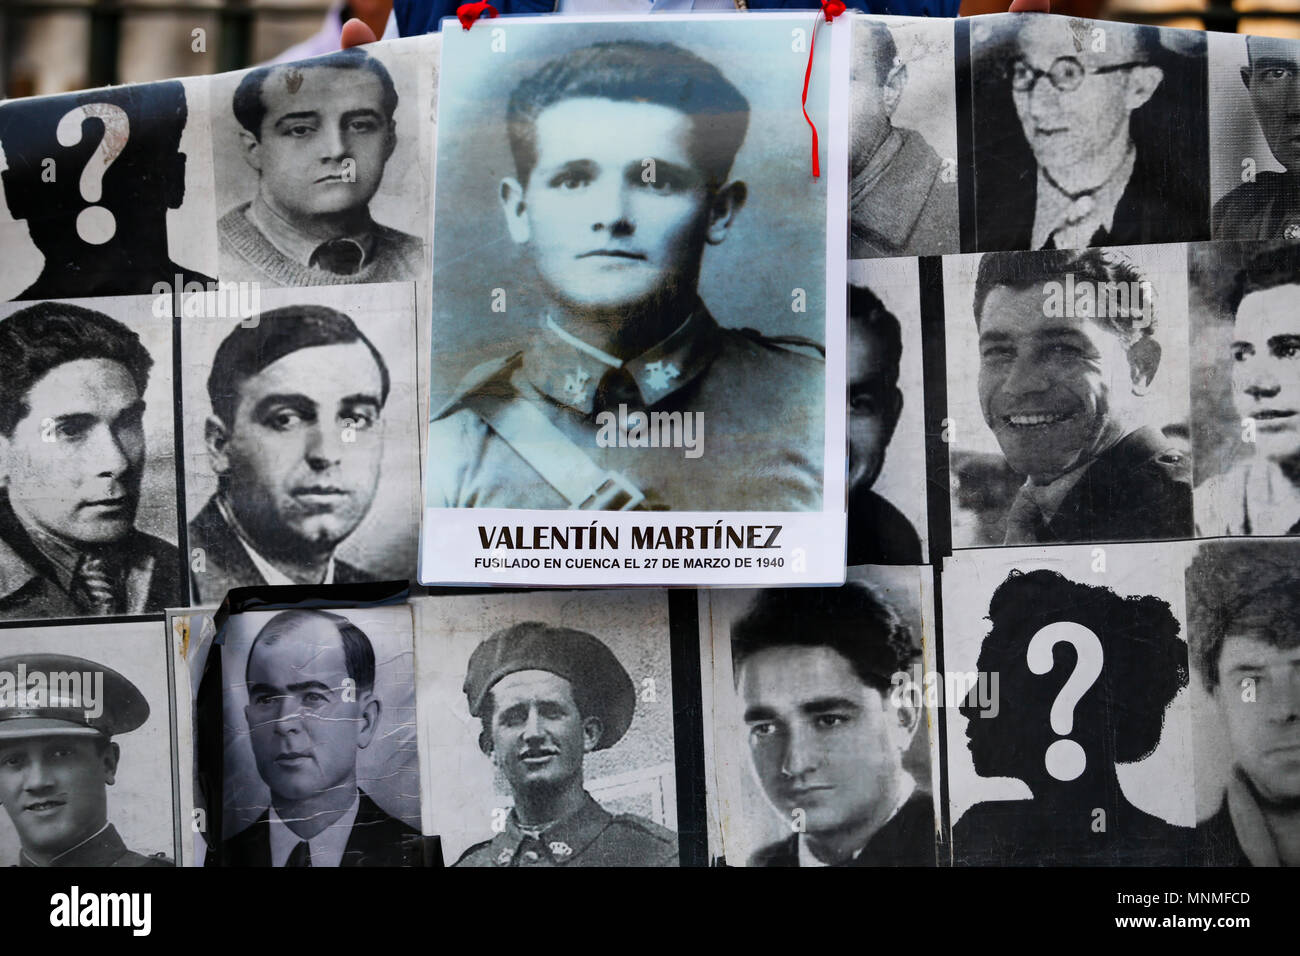 Fotografie di scomparso dal regime di Franco con migliaia di irrisolti fotografie e ritratti visto pubblicato nel centro di Madrid. I dimostranti si sono riuniti nel centro di Madrid in un ricordo di rally per chi ha perso la vita sotto la dittatura di Franco. Foto Stock